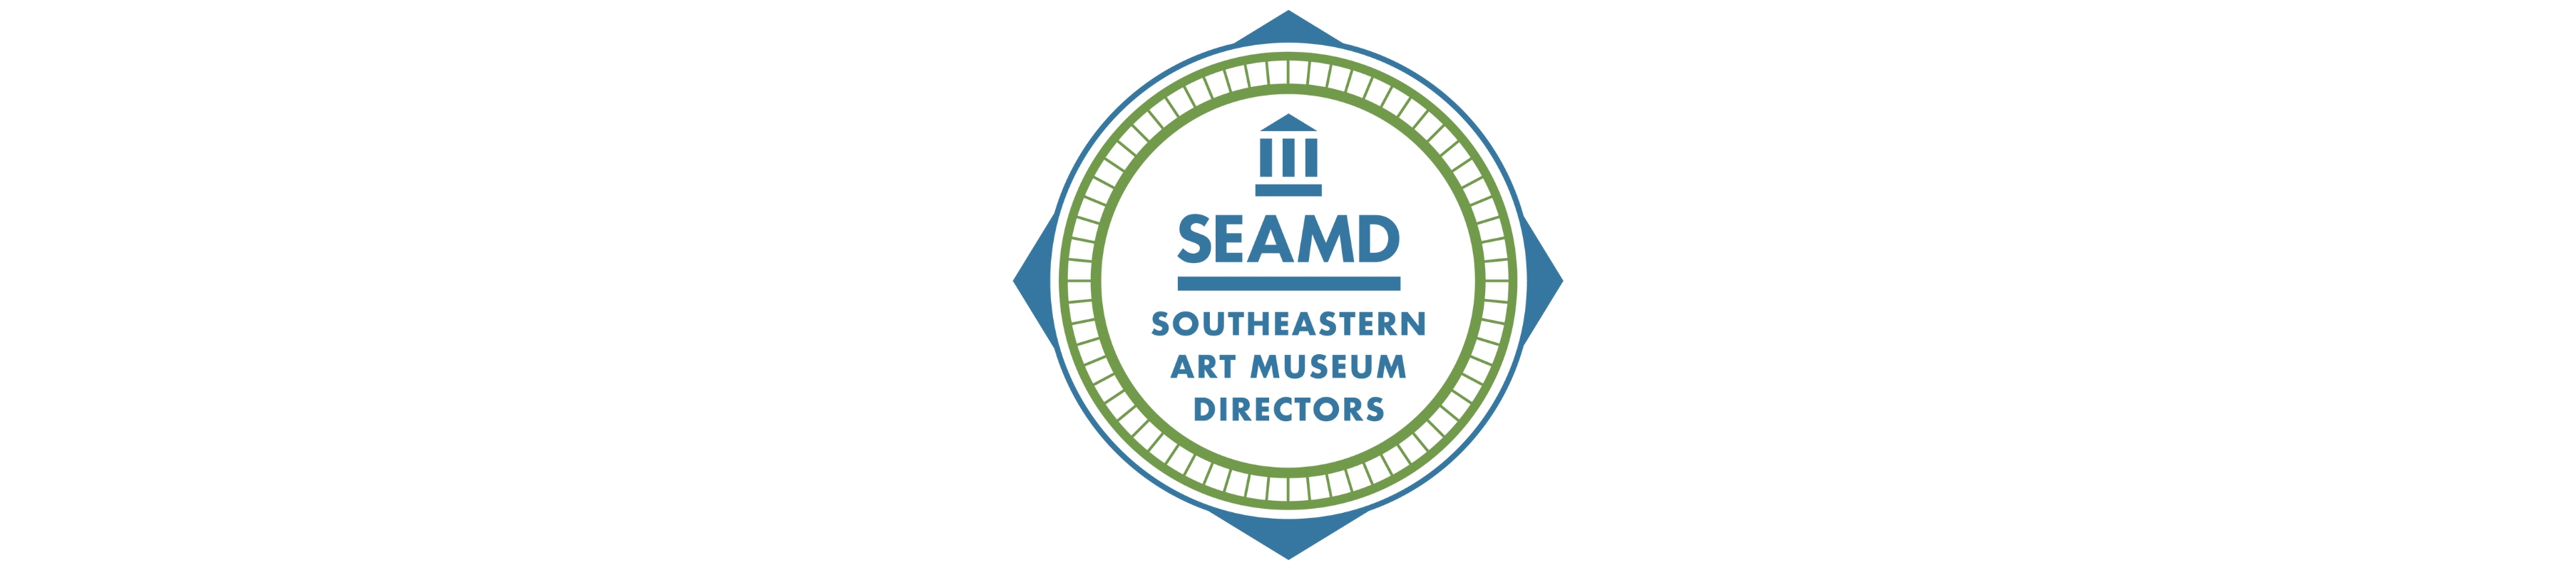 SEAMD logo